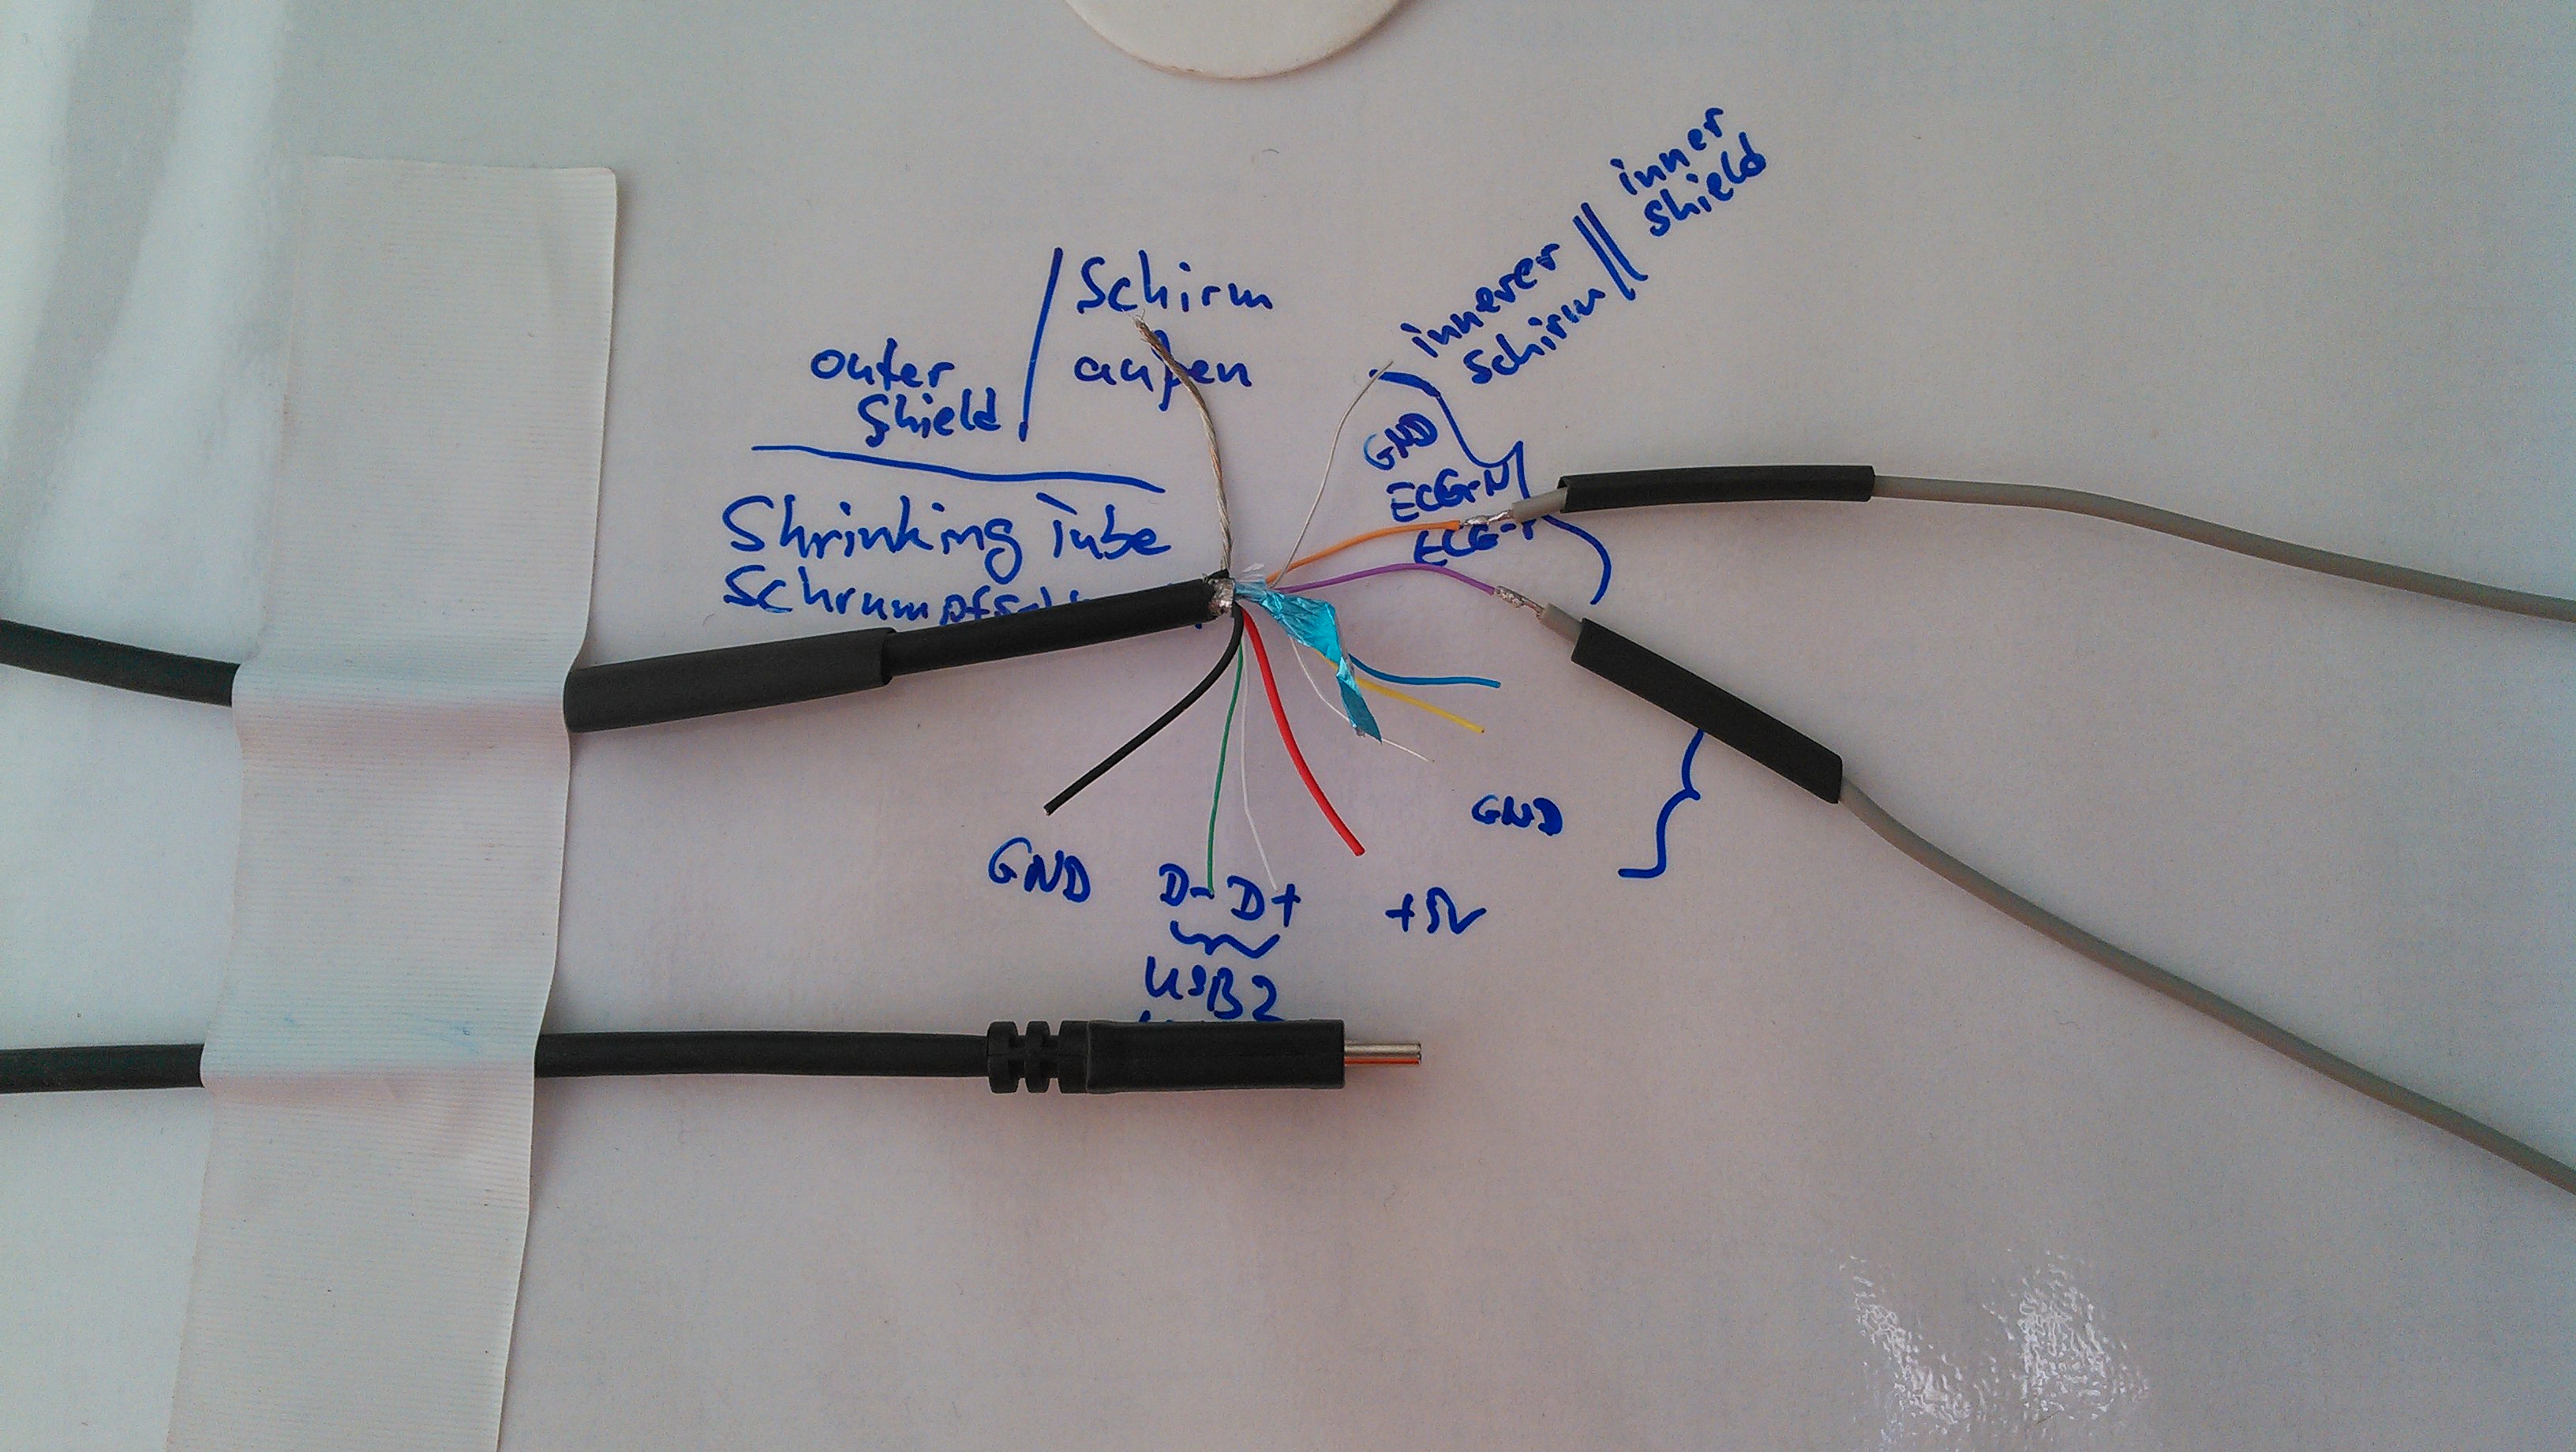 solder ecg usb wires